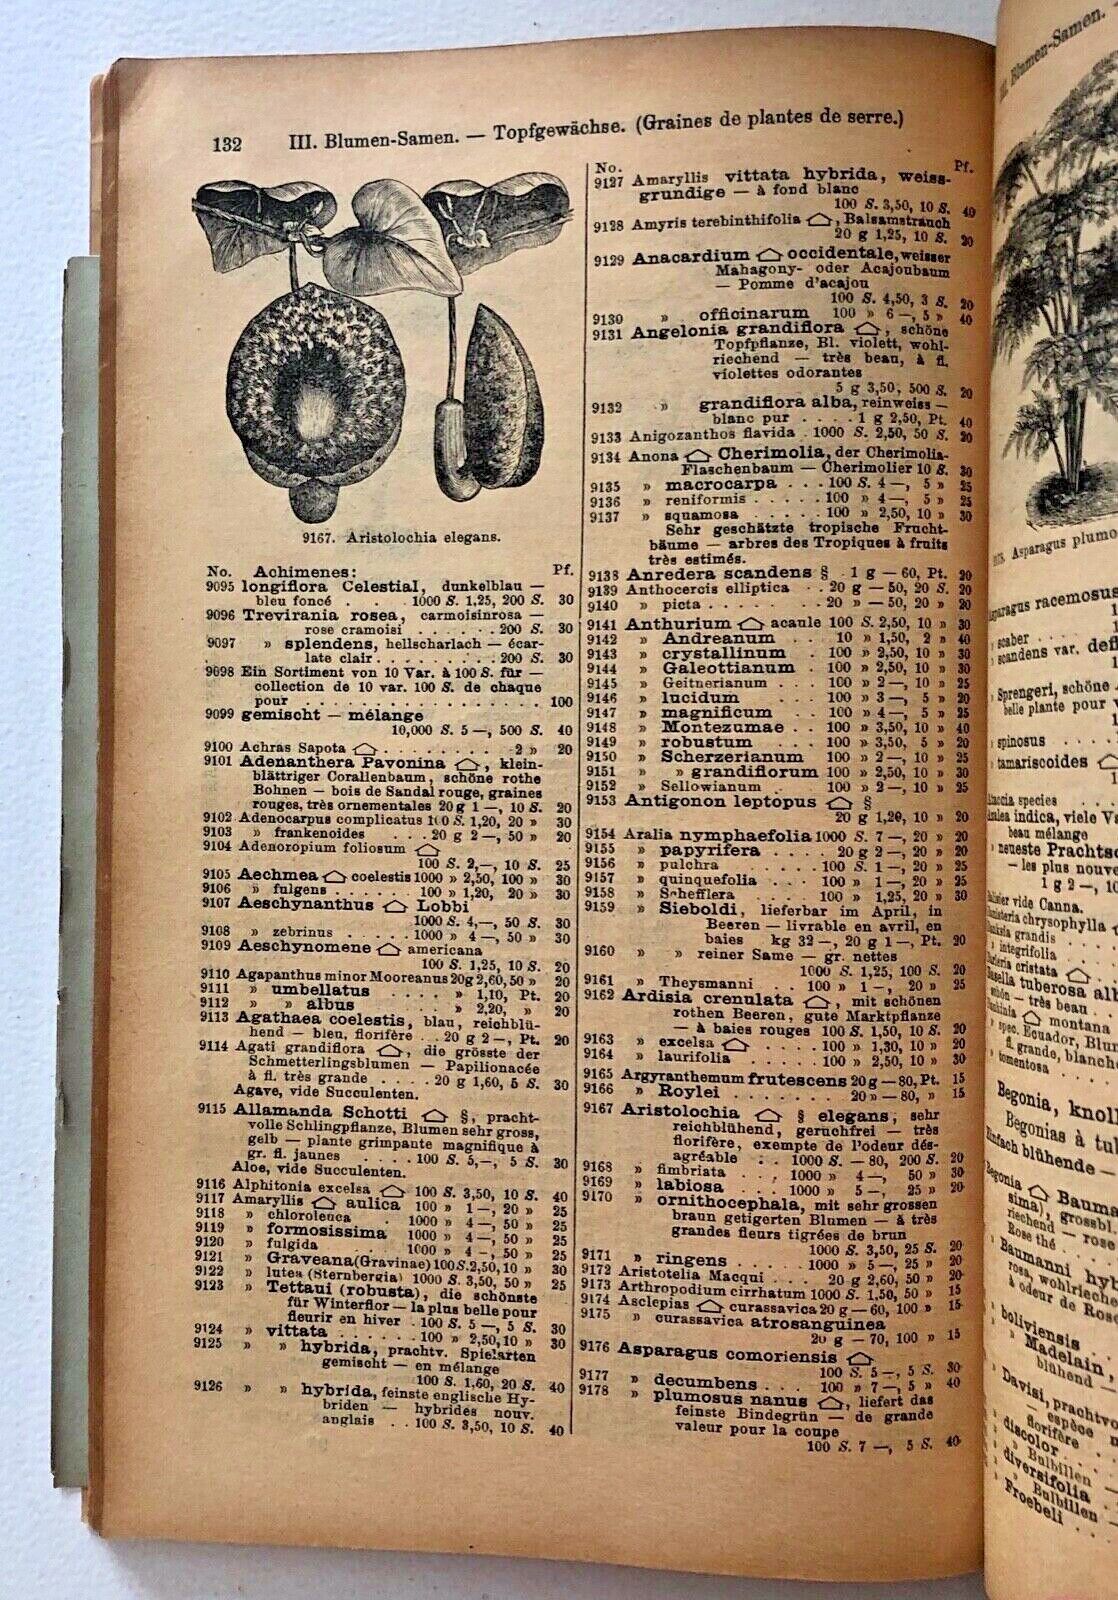 Haage & Schmidt 1900 Haupt-Verzeichniss Samen und Pflanzen